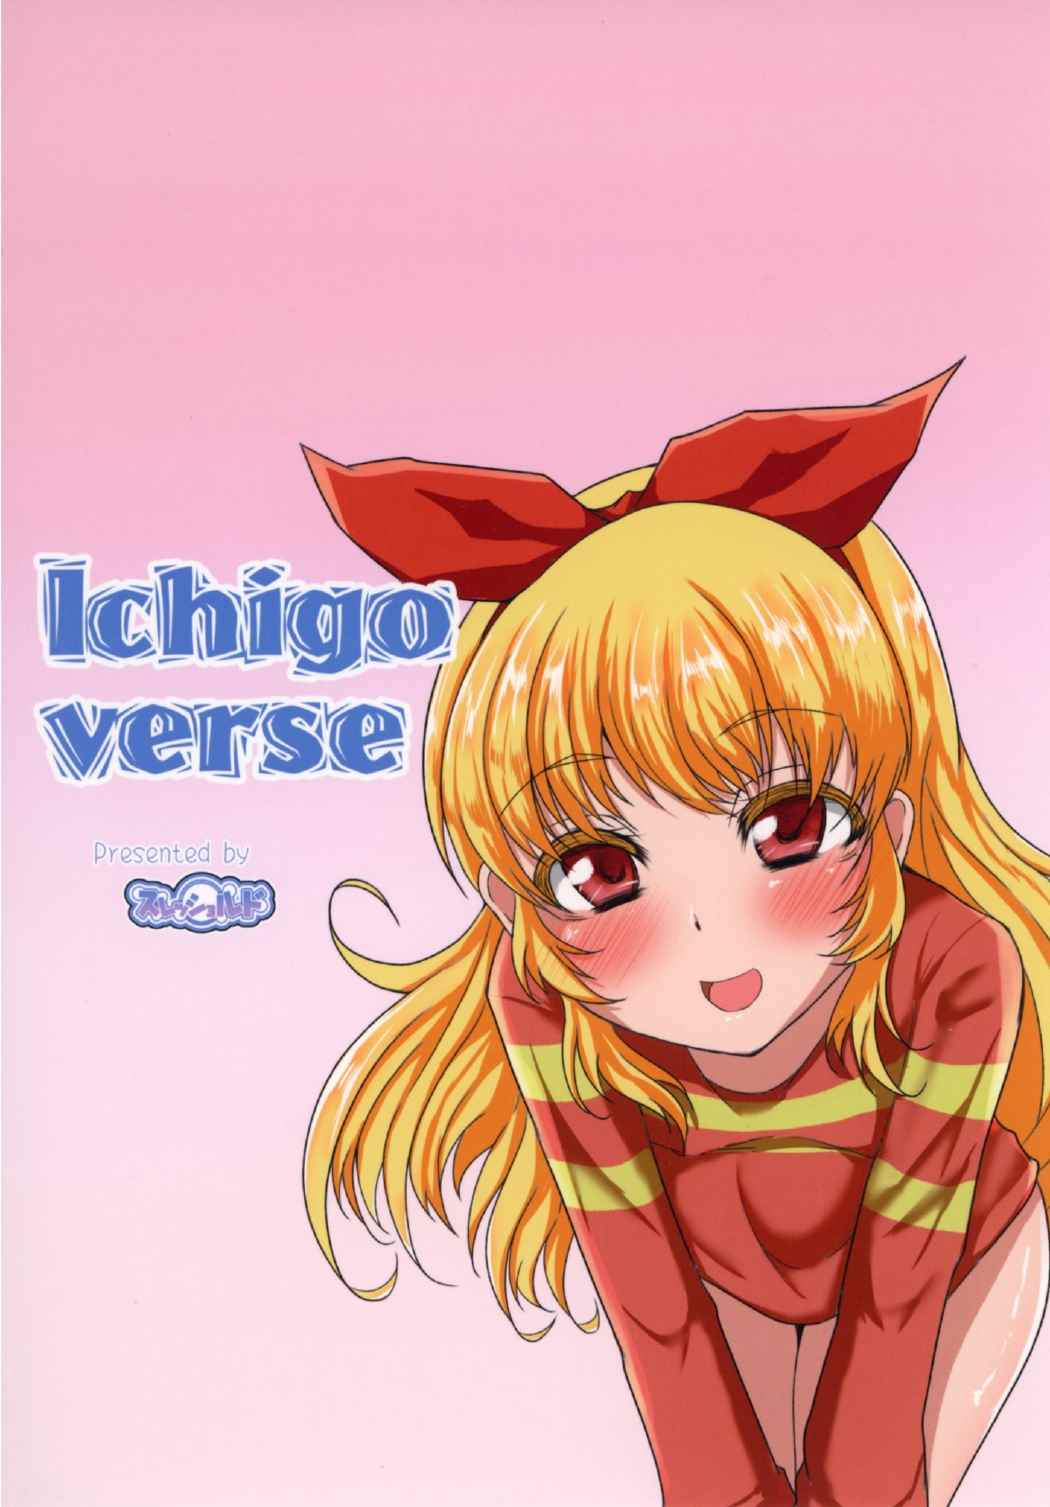 (芸能人はカードが命!11) [スレッショルド (エクゼター)] Ichigo-Verse (アイカツ!)